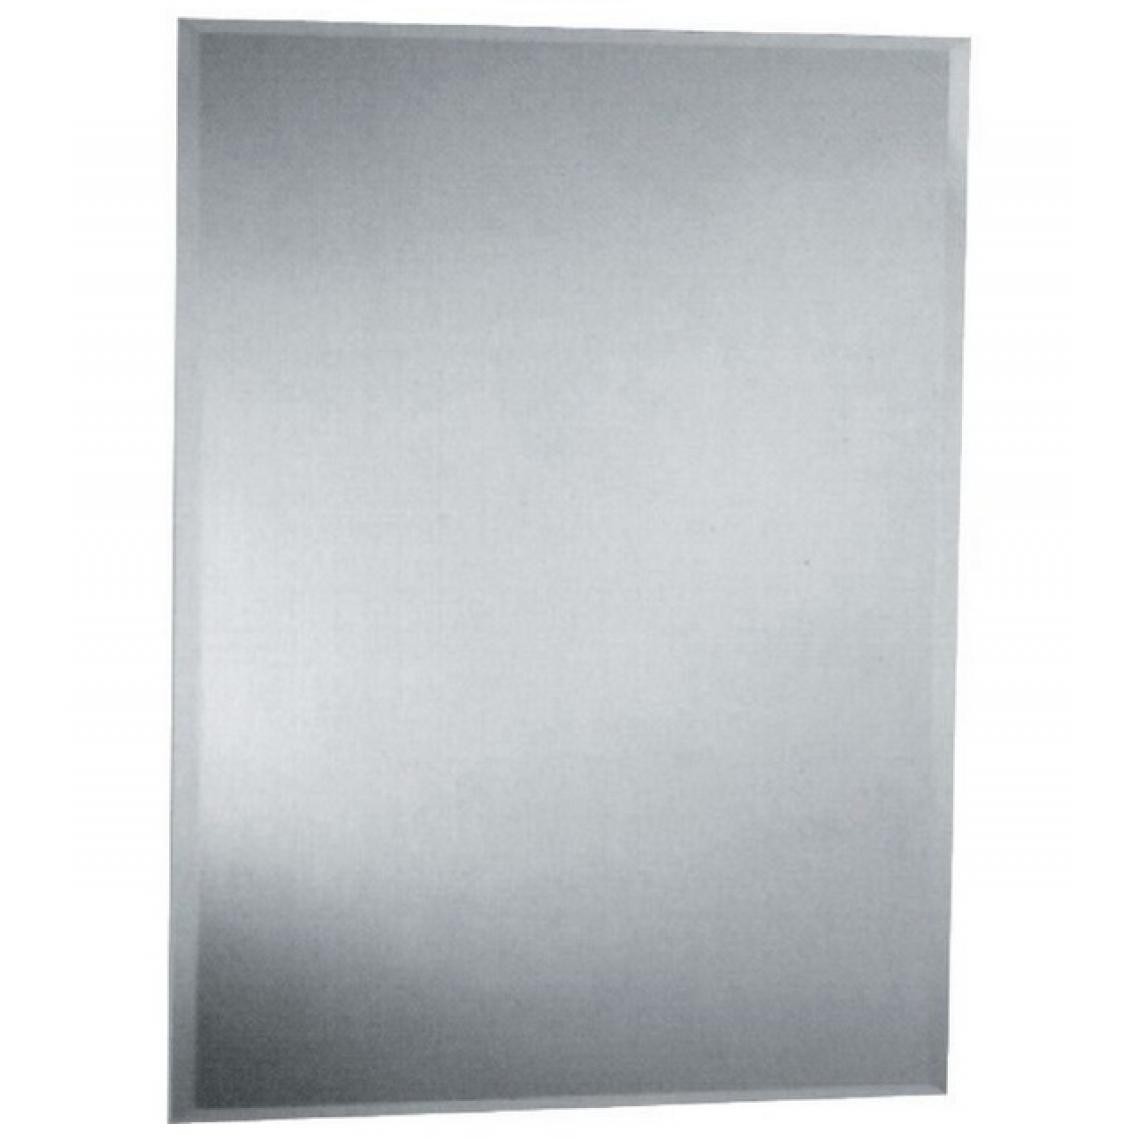 Sider - Sider - Miroir rectangulaire 540 x 390 mm - Miroir de salle de bain